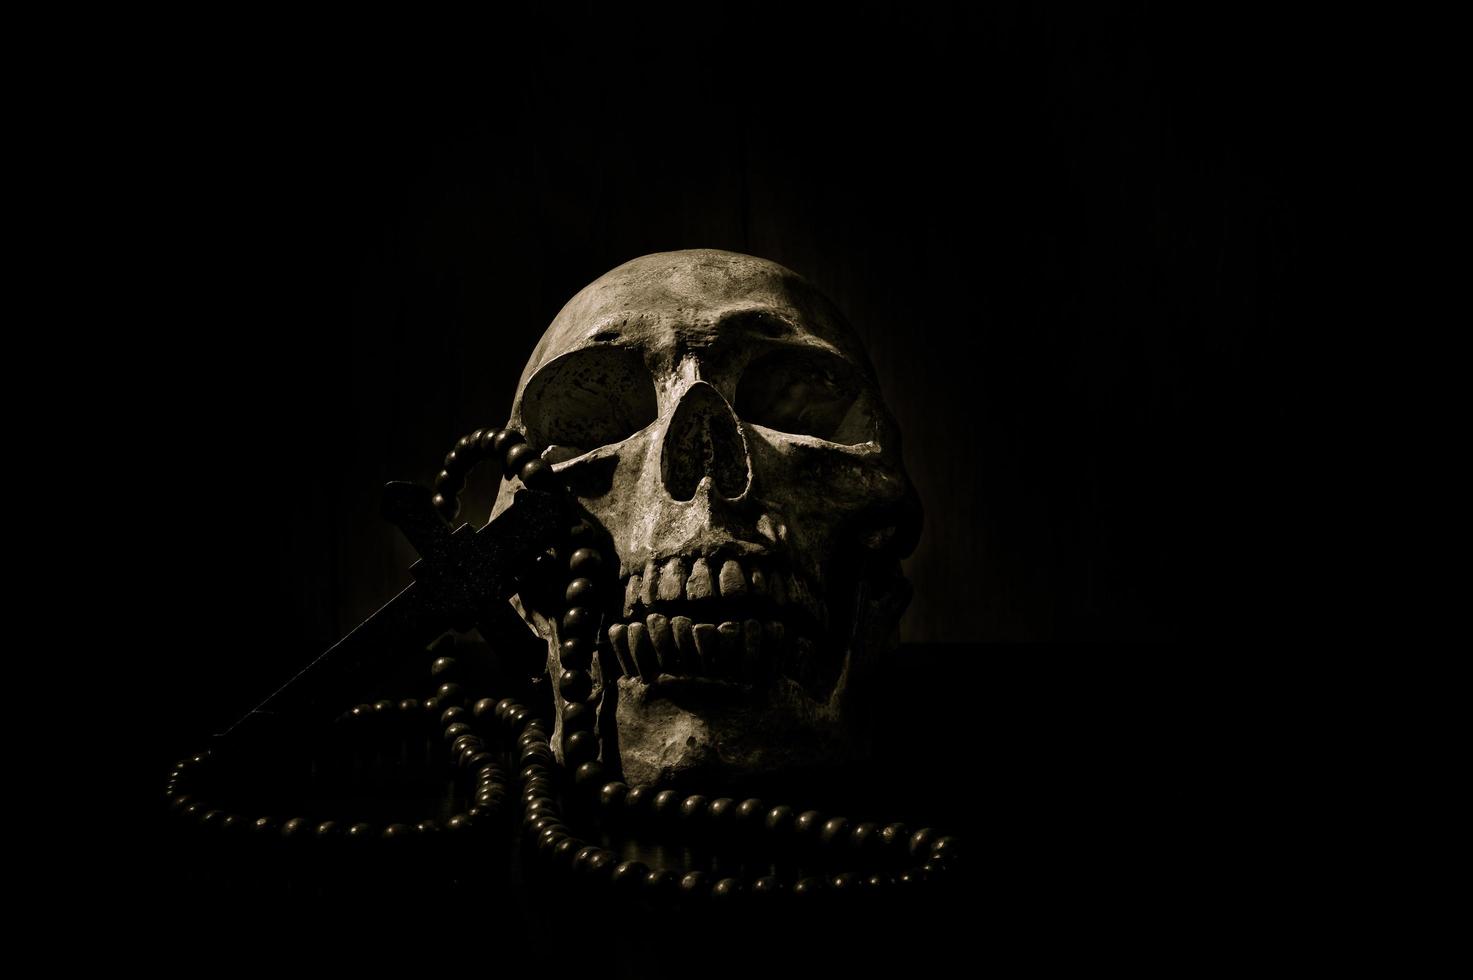 ainda arte de vida de um crânio humano e talão em um fundo preto foto